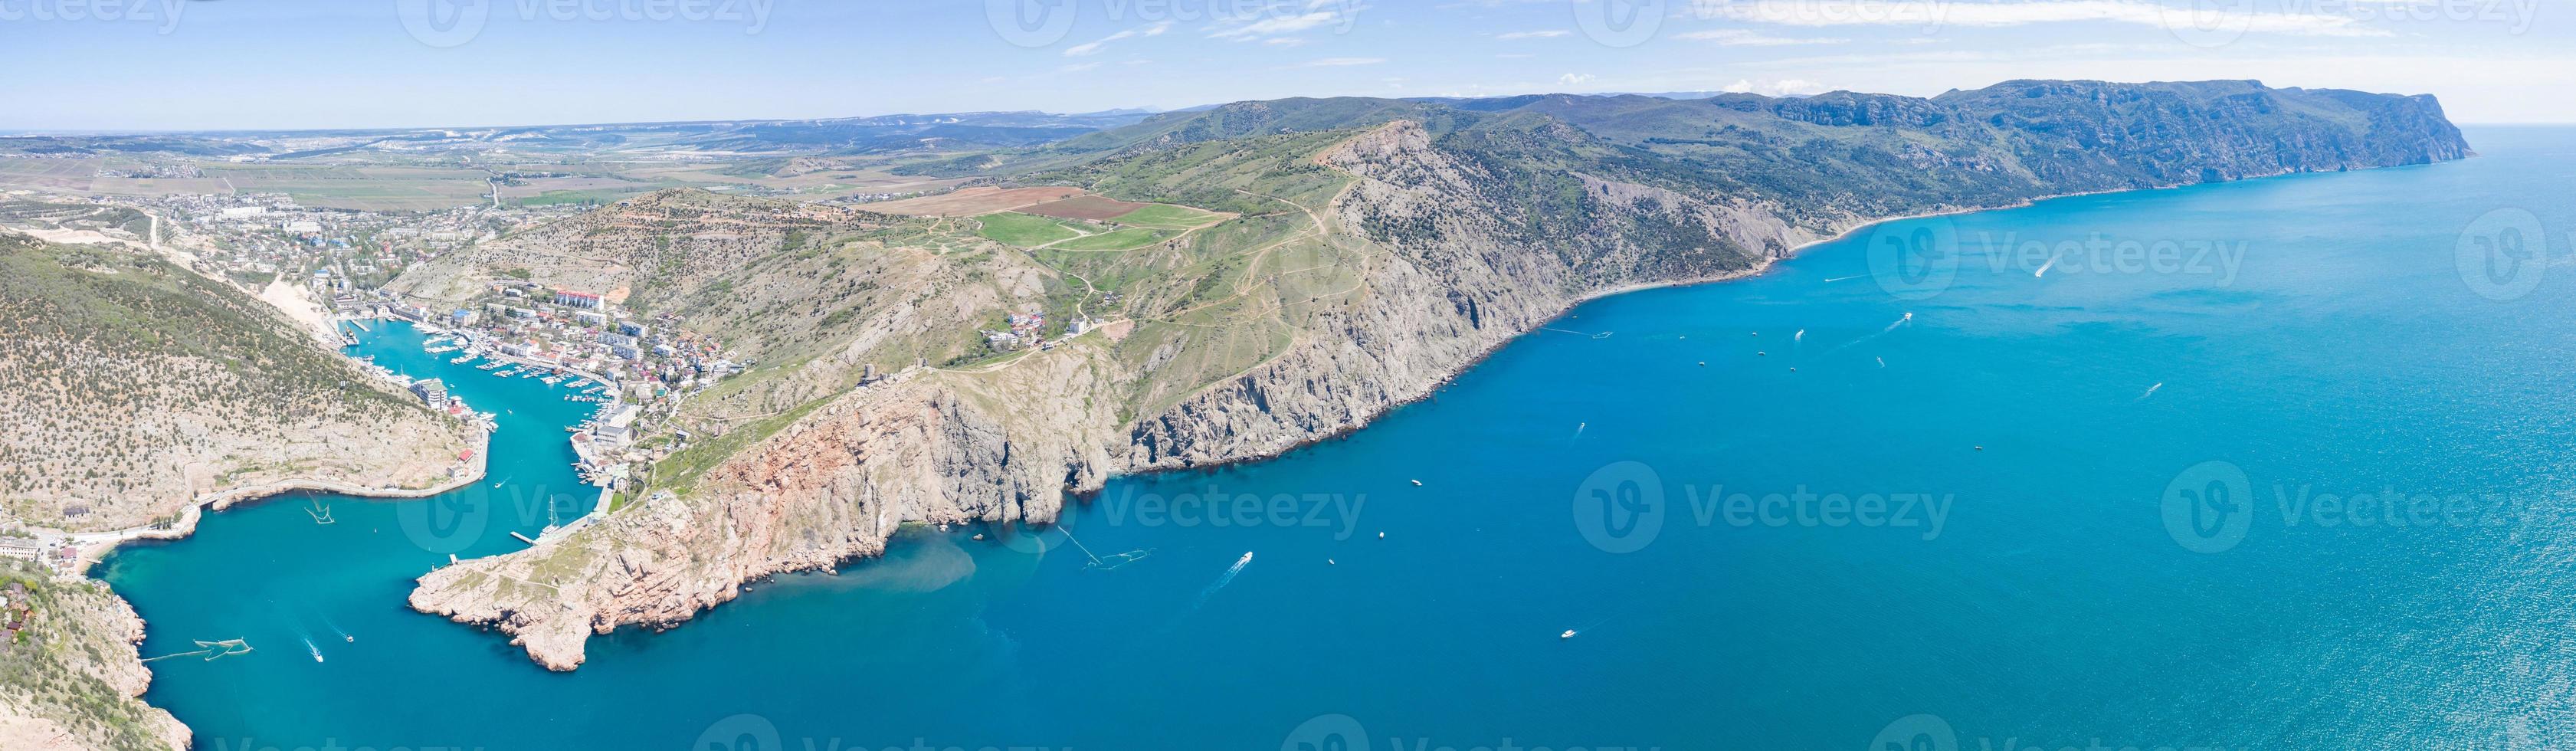 Vista aérea de la bahía y el puerto de Balaklavsky en Crimea foto